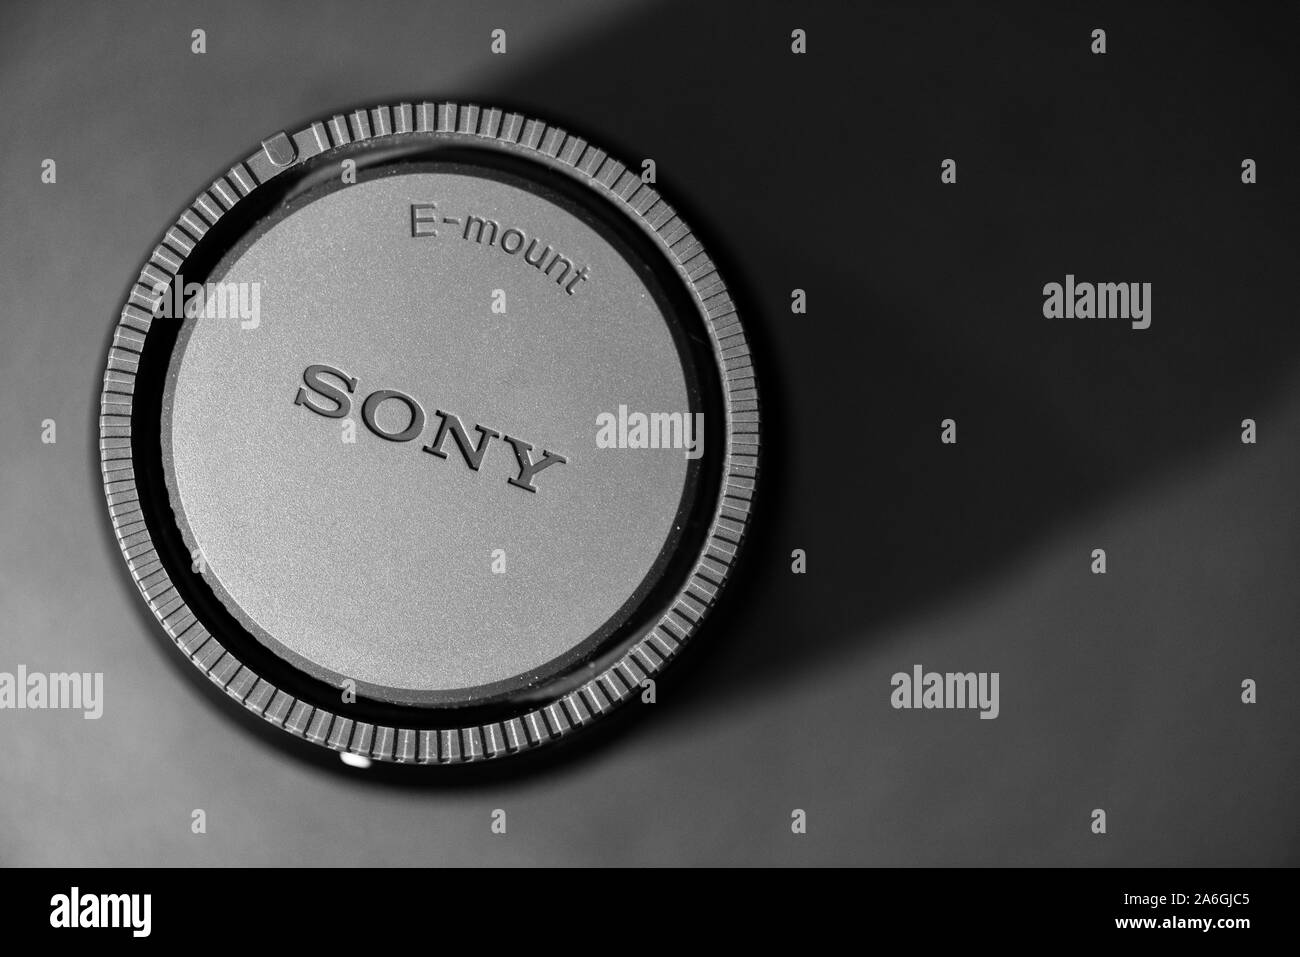 Sony e lente attacco su uno sfondo nero con ombra, ingranaggio della fotocamera Sony A7iii Foto Stock